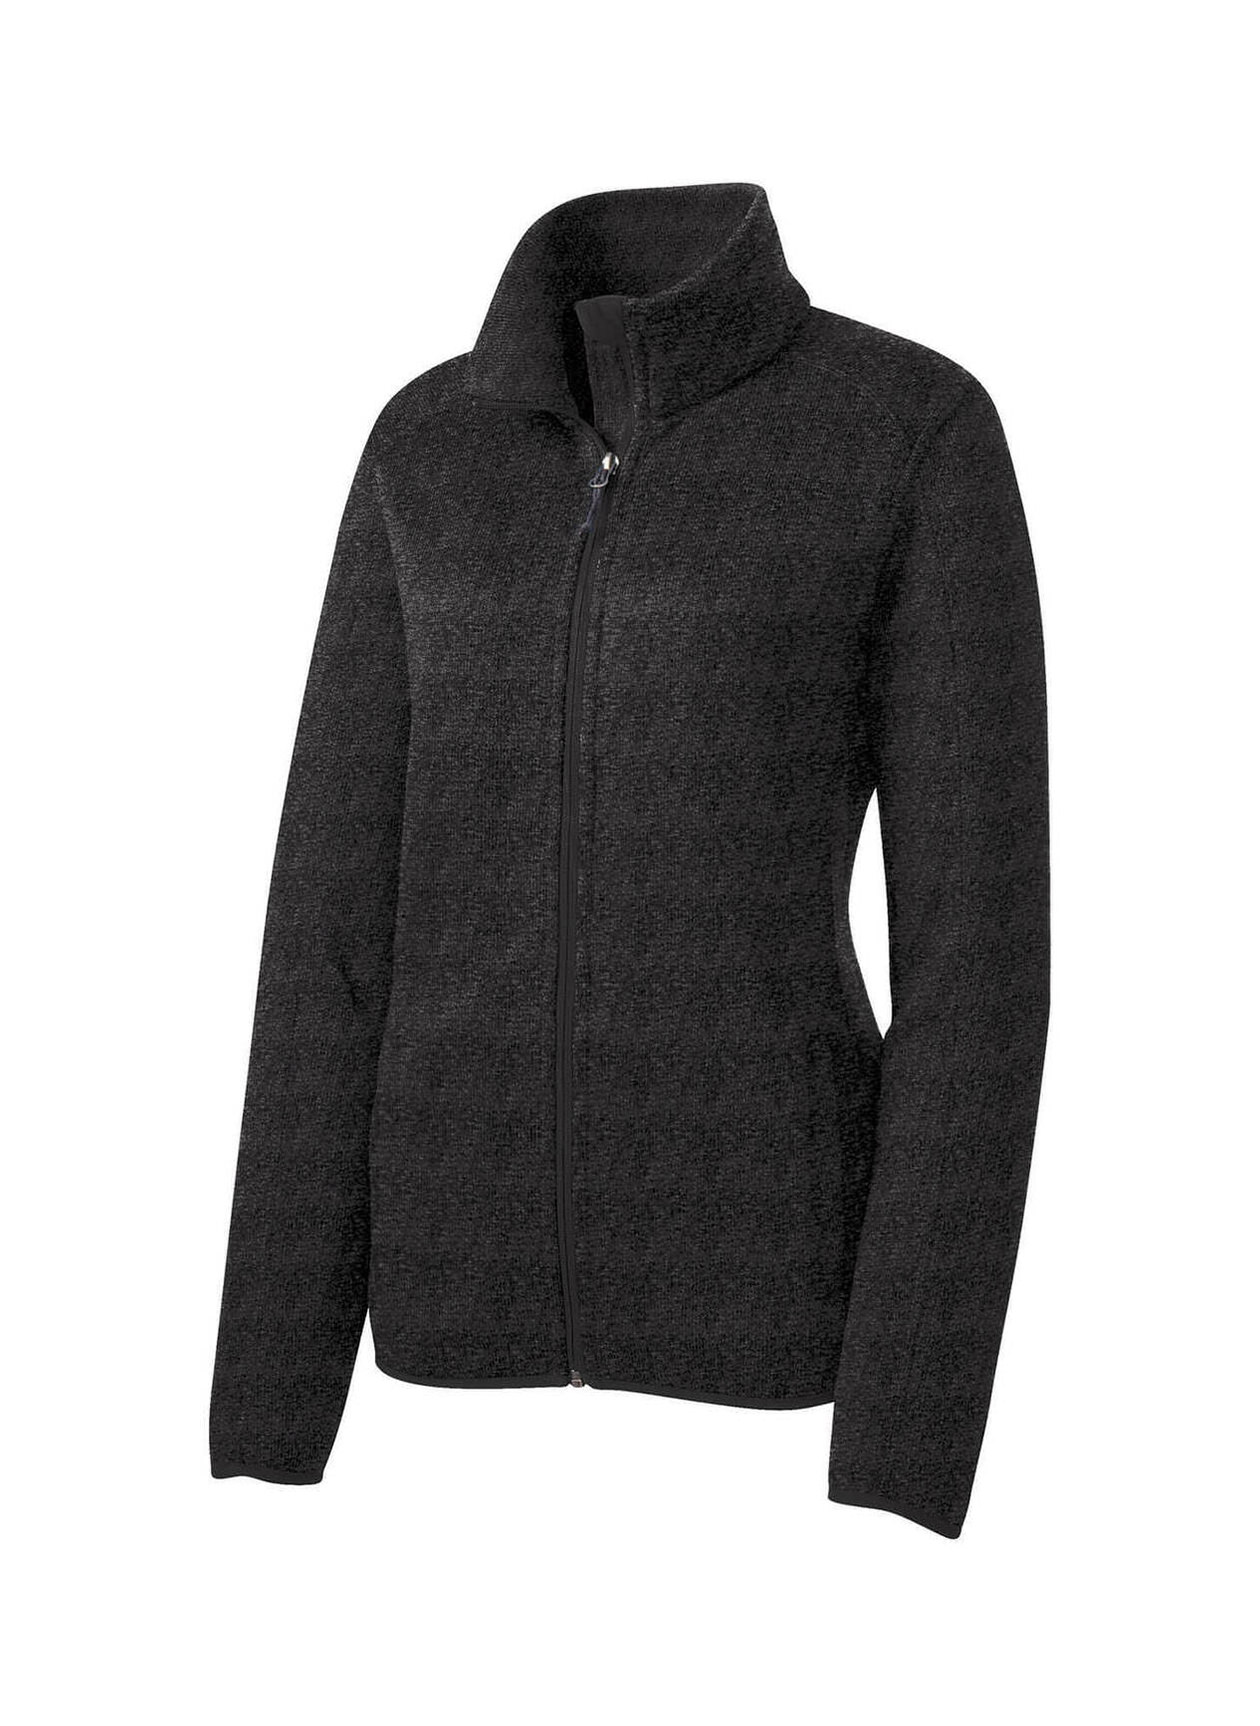 Port Authority® Women's Sweater Fleece Jacket